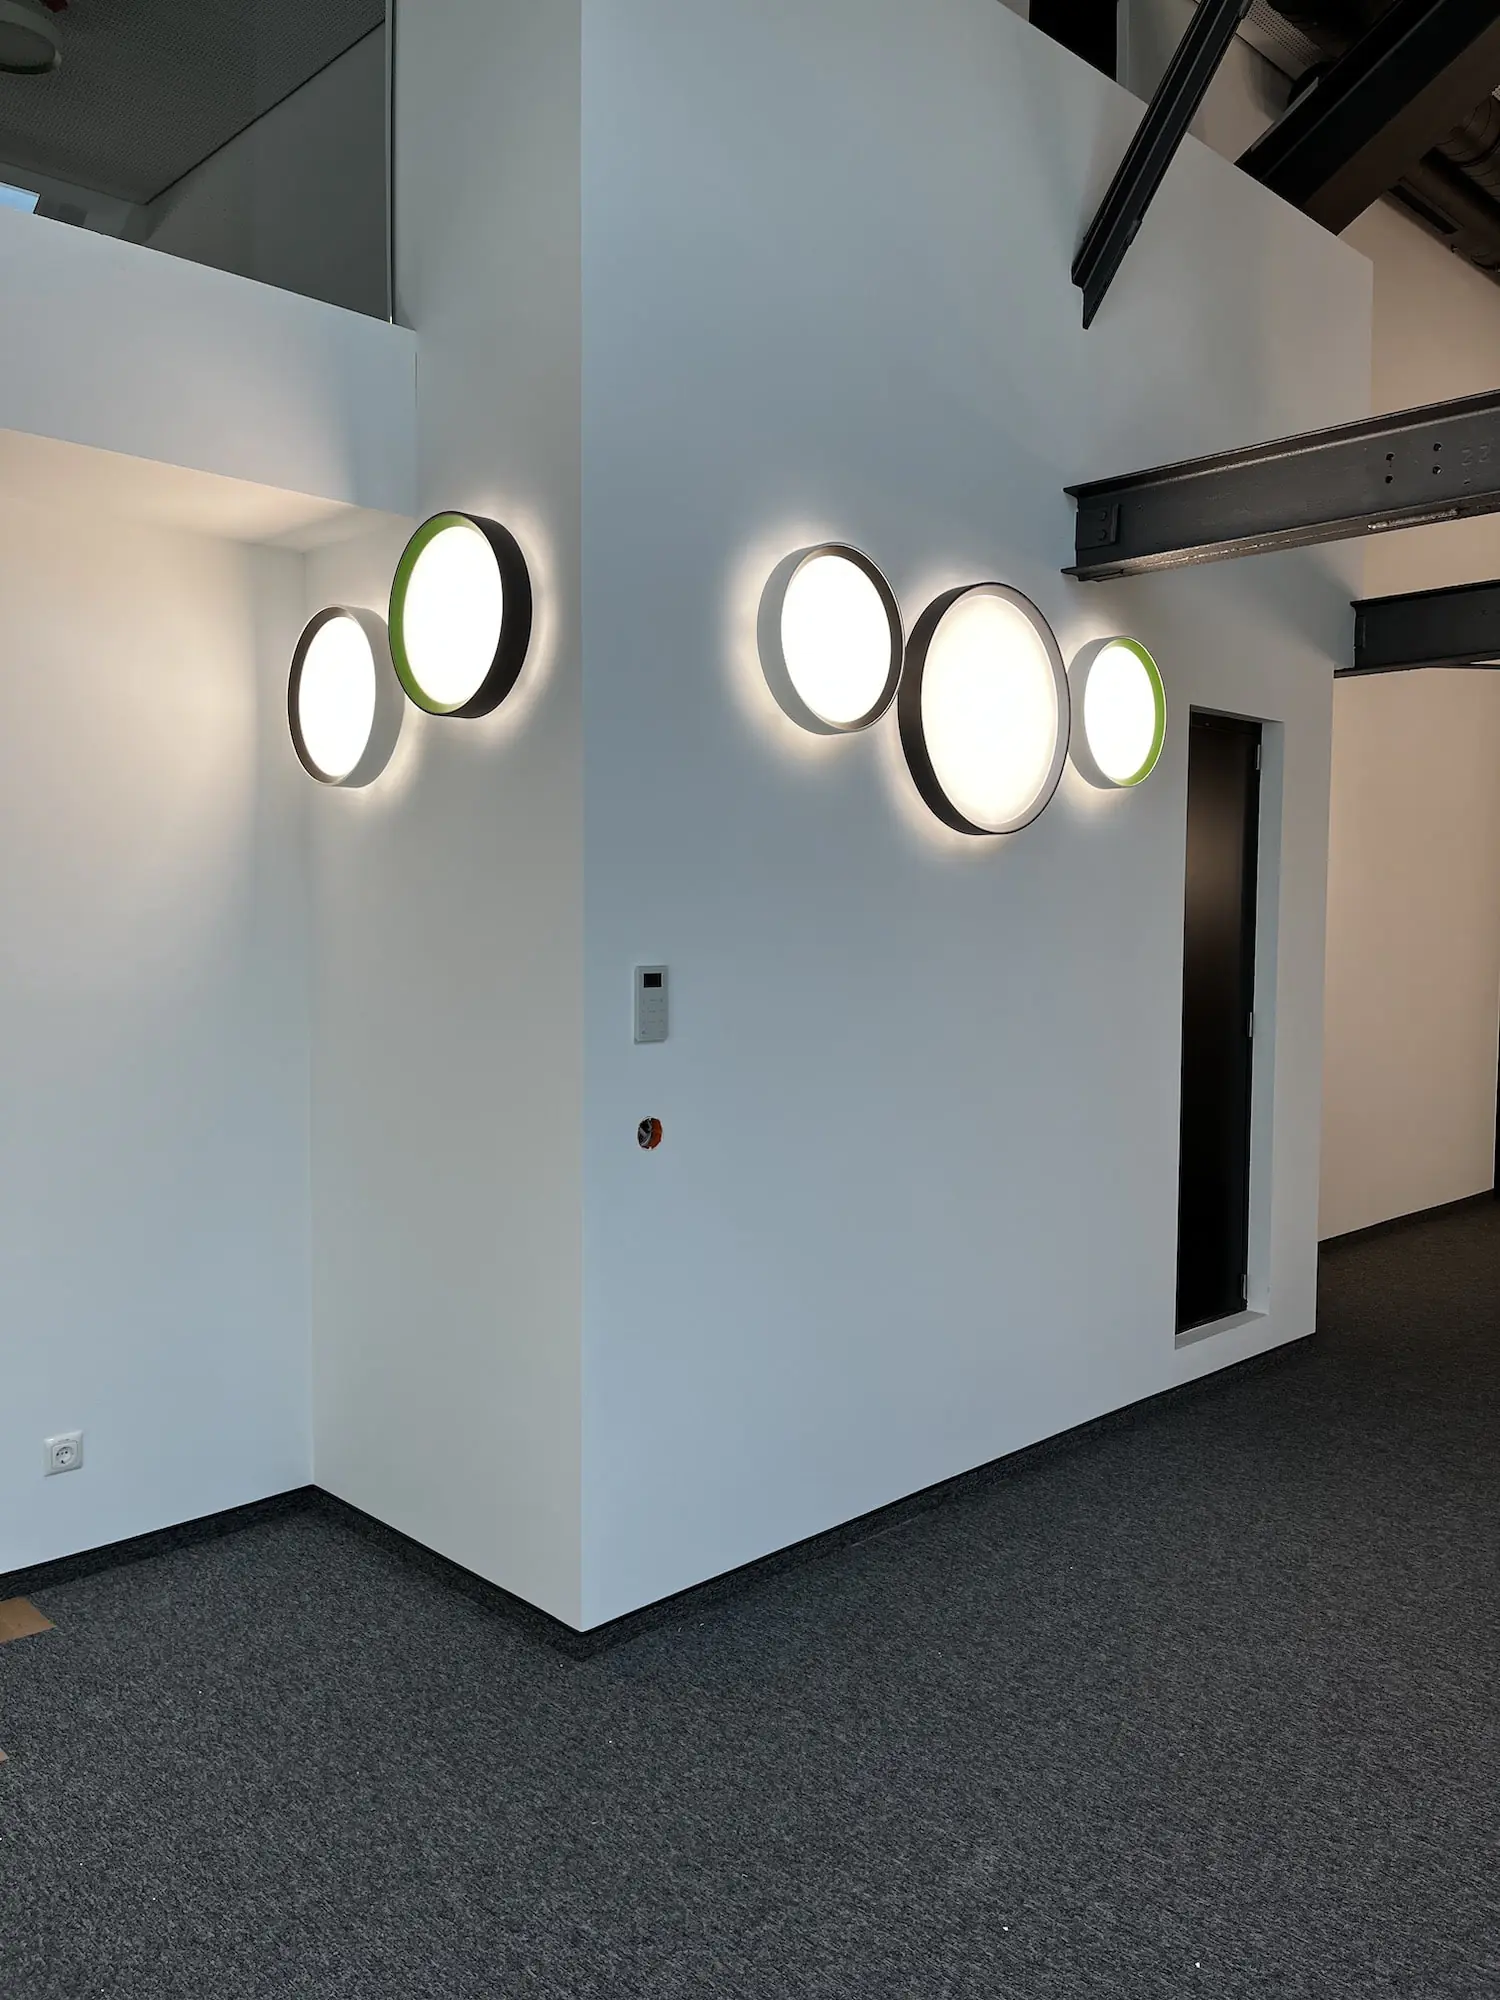 LED Leuchten für ihr Büro - Deckenleuchten, Wandleuchten, Einbauleuchten und vieles mehr.